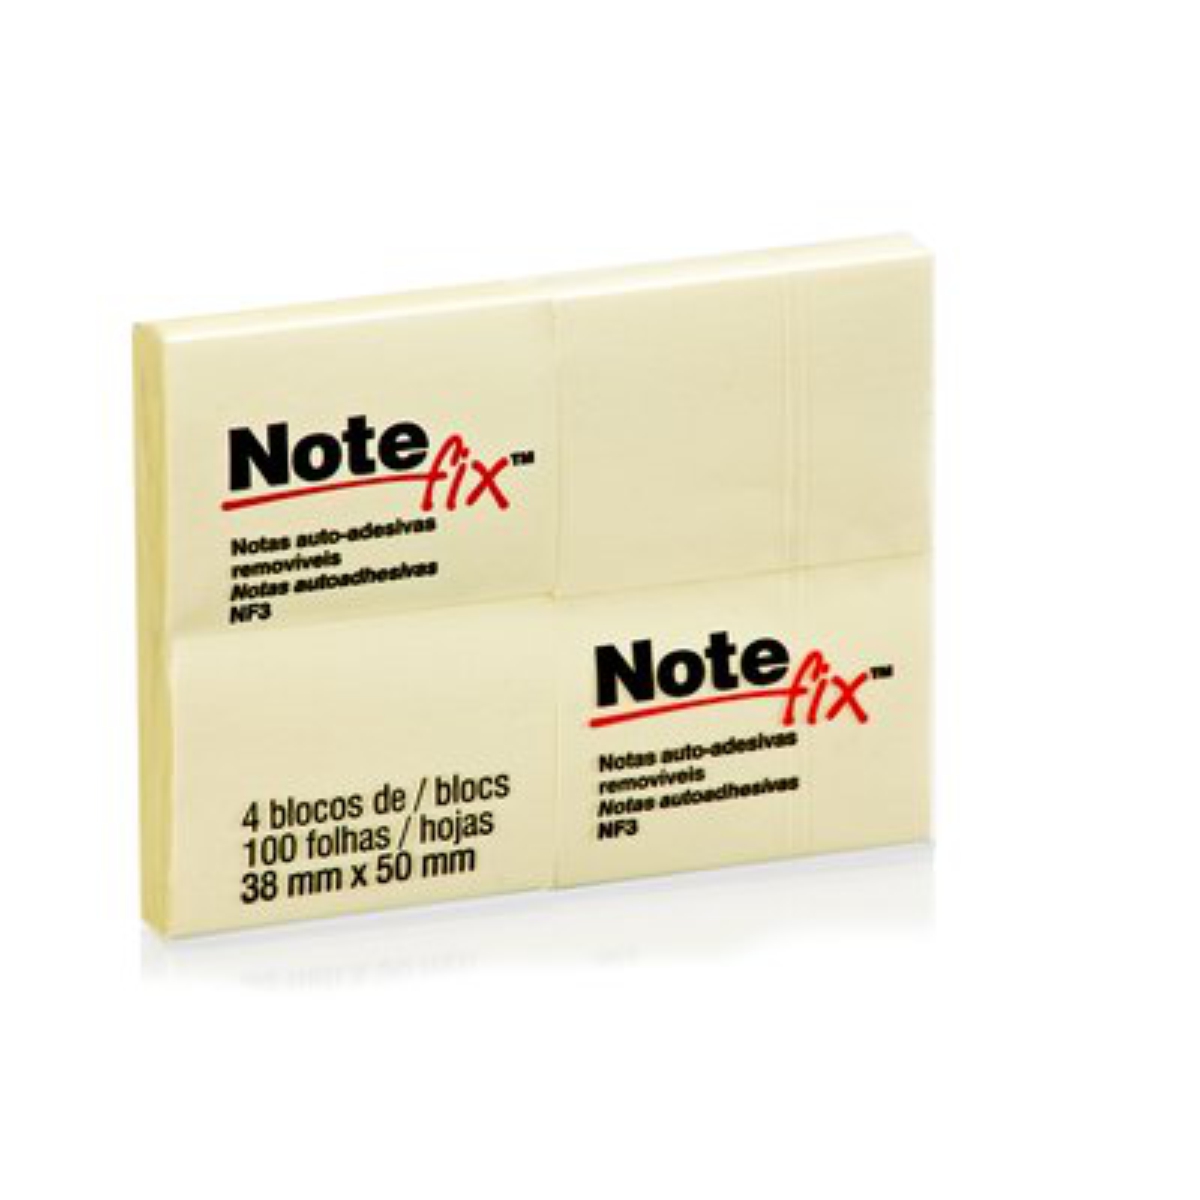 Bloco Notas Adesivas Notefix Amarelo 38x50mm 4 Blocos 100 folhas